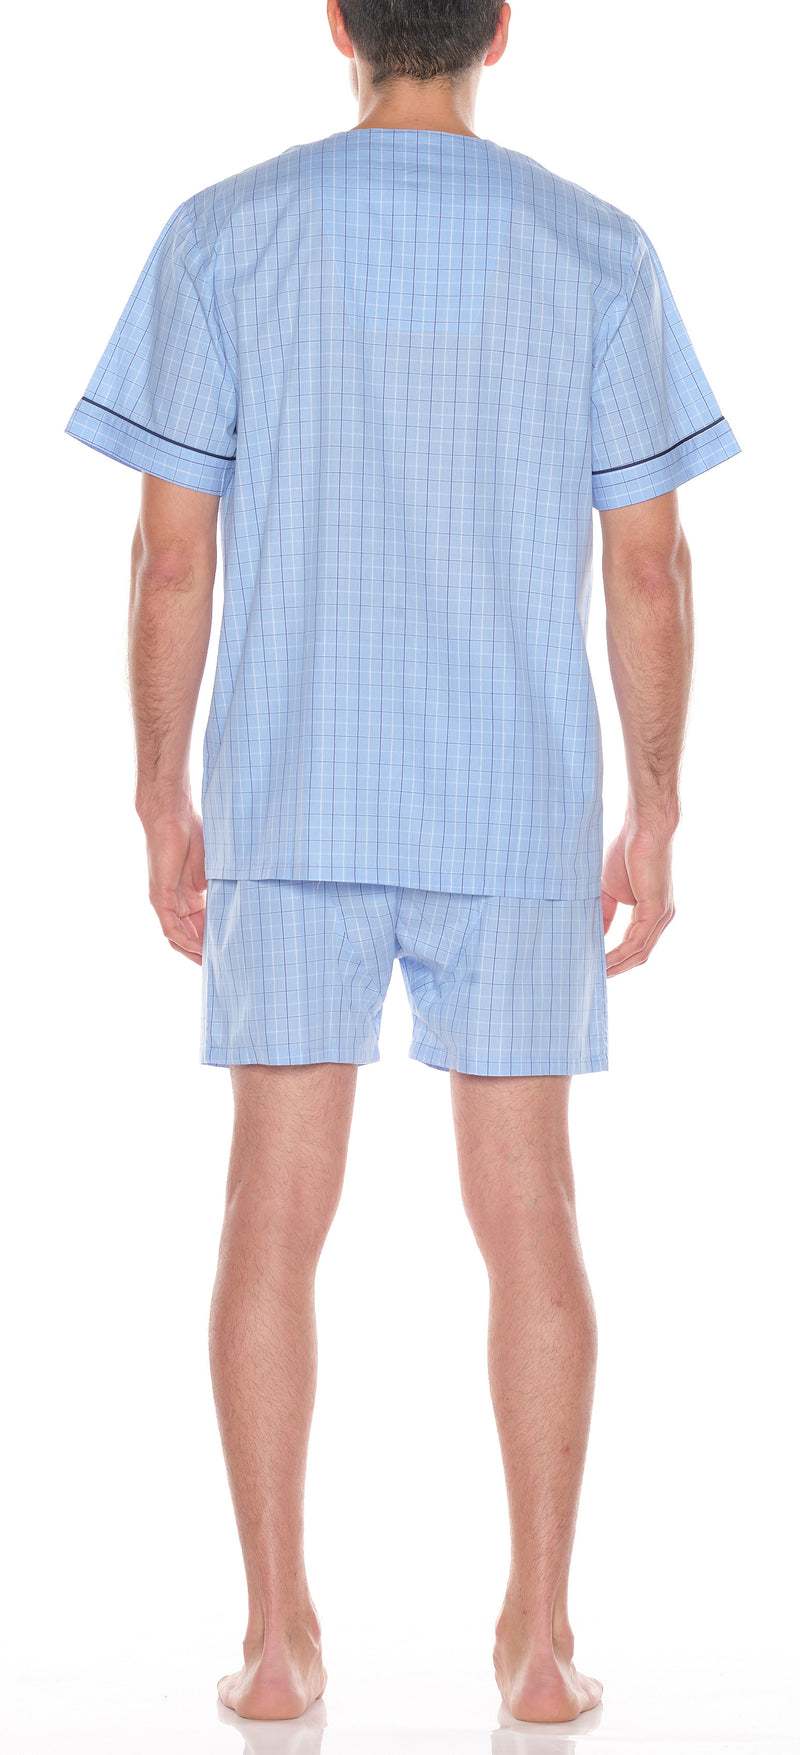 Pijama Shorty De Algodón Con Cuadros Azul Claro